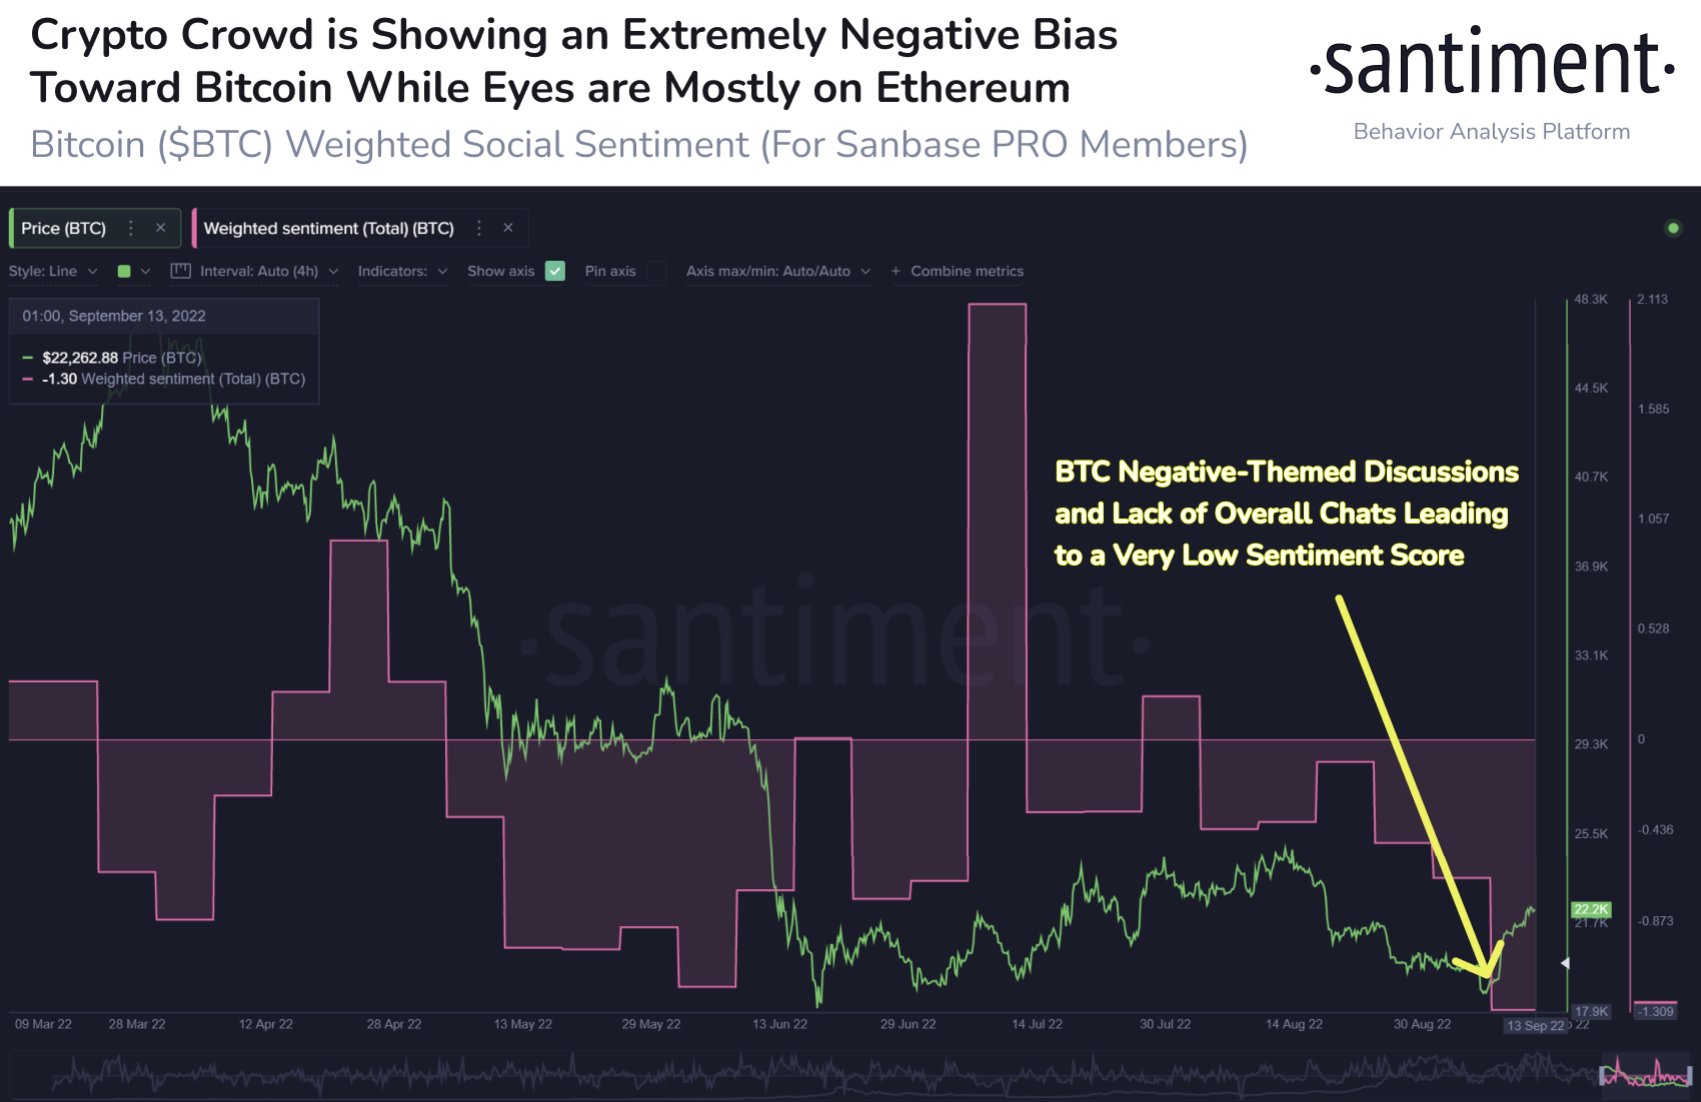 Negative bias toward Bitcoin